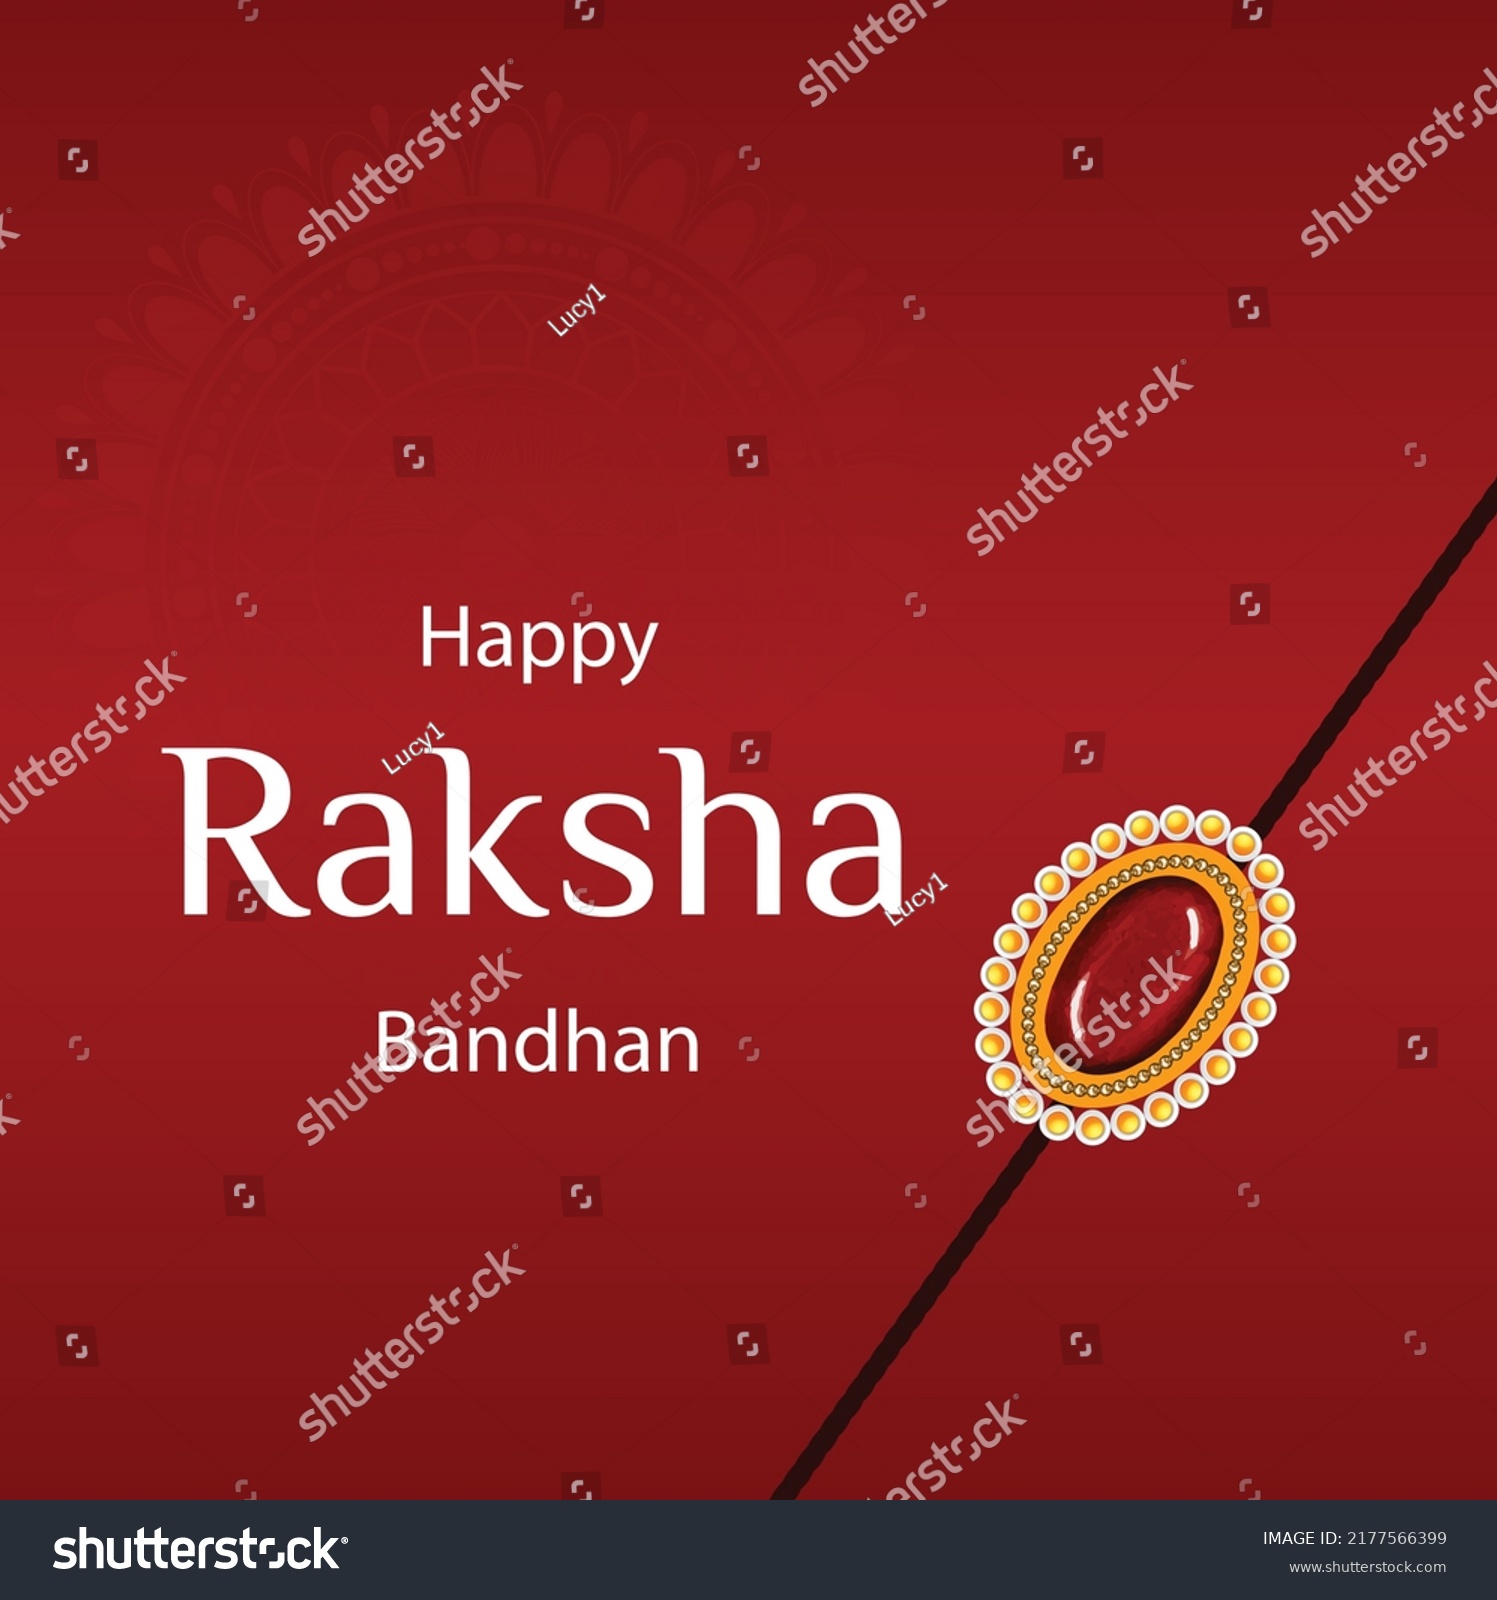 SVG of Happy Raksha Bandhan Indian Hindu Festival Celebration Vector Illustrations With Creative Background svg